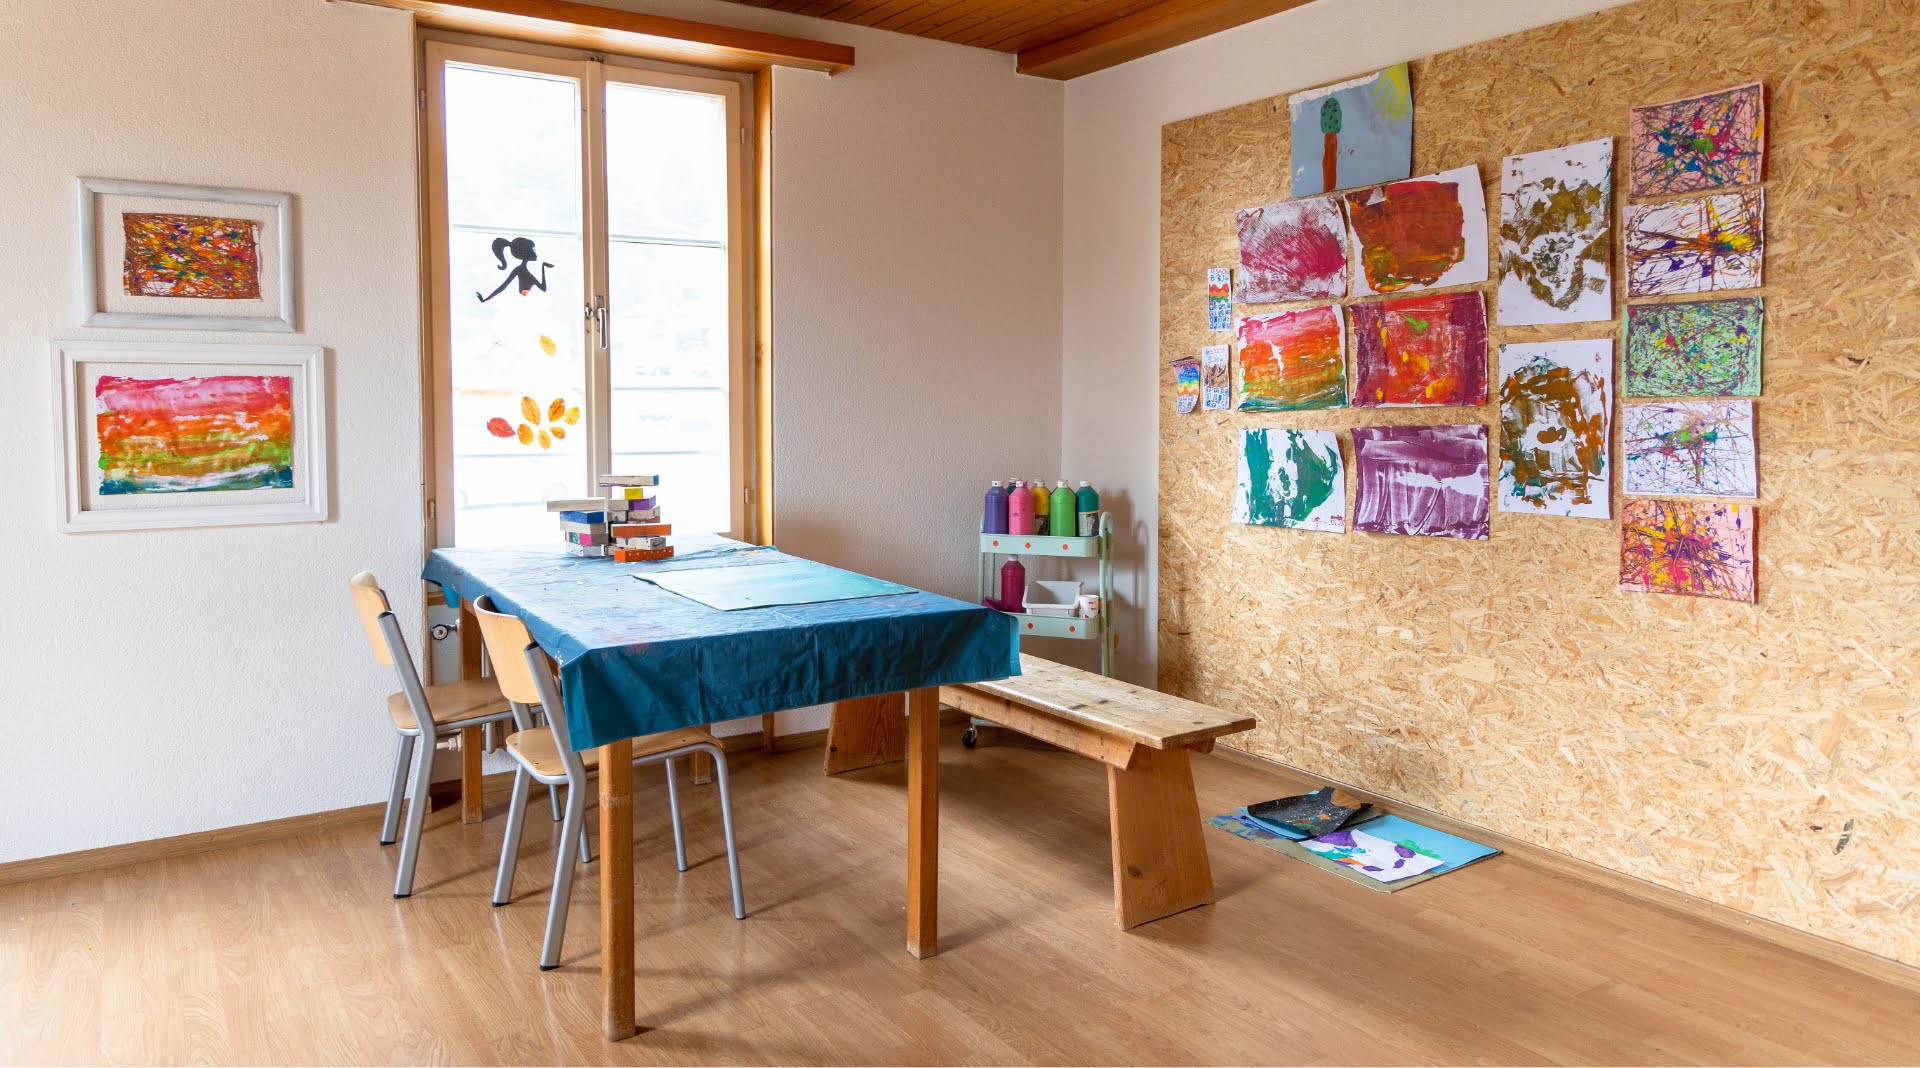 Malzimmer mit Tisch zum malen und Wand mit Bilder in den Tagesstrukturen Menziken